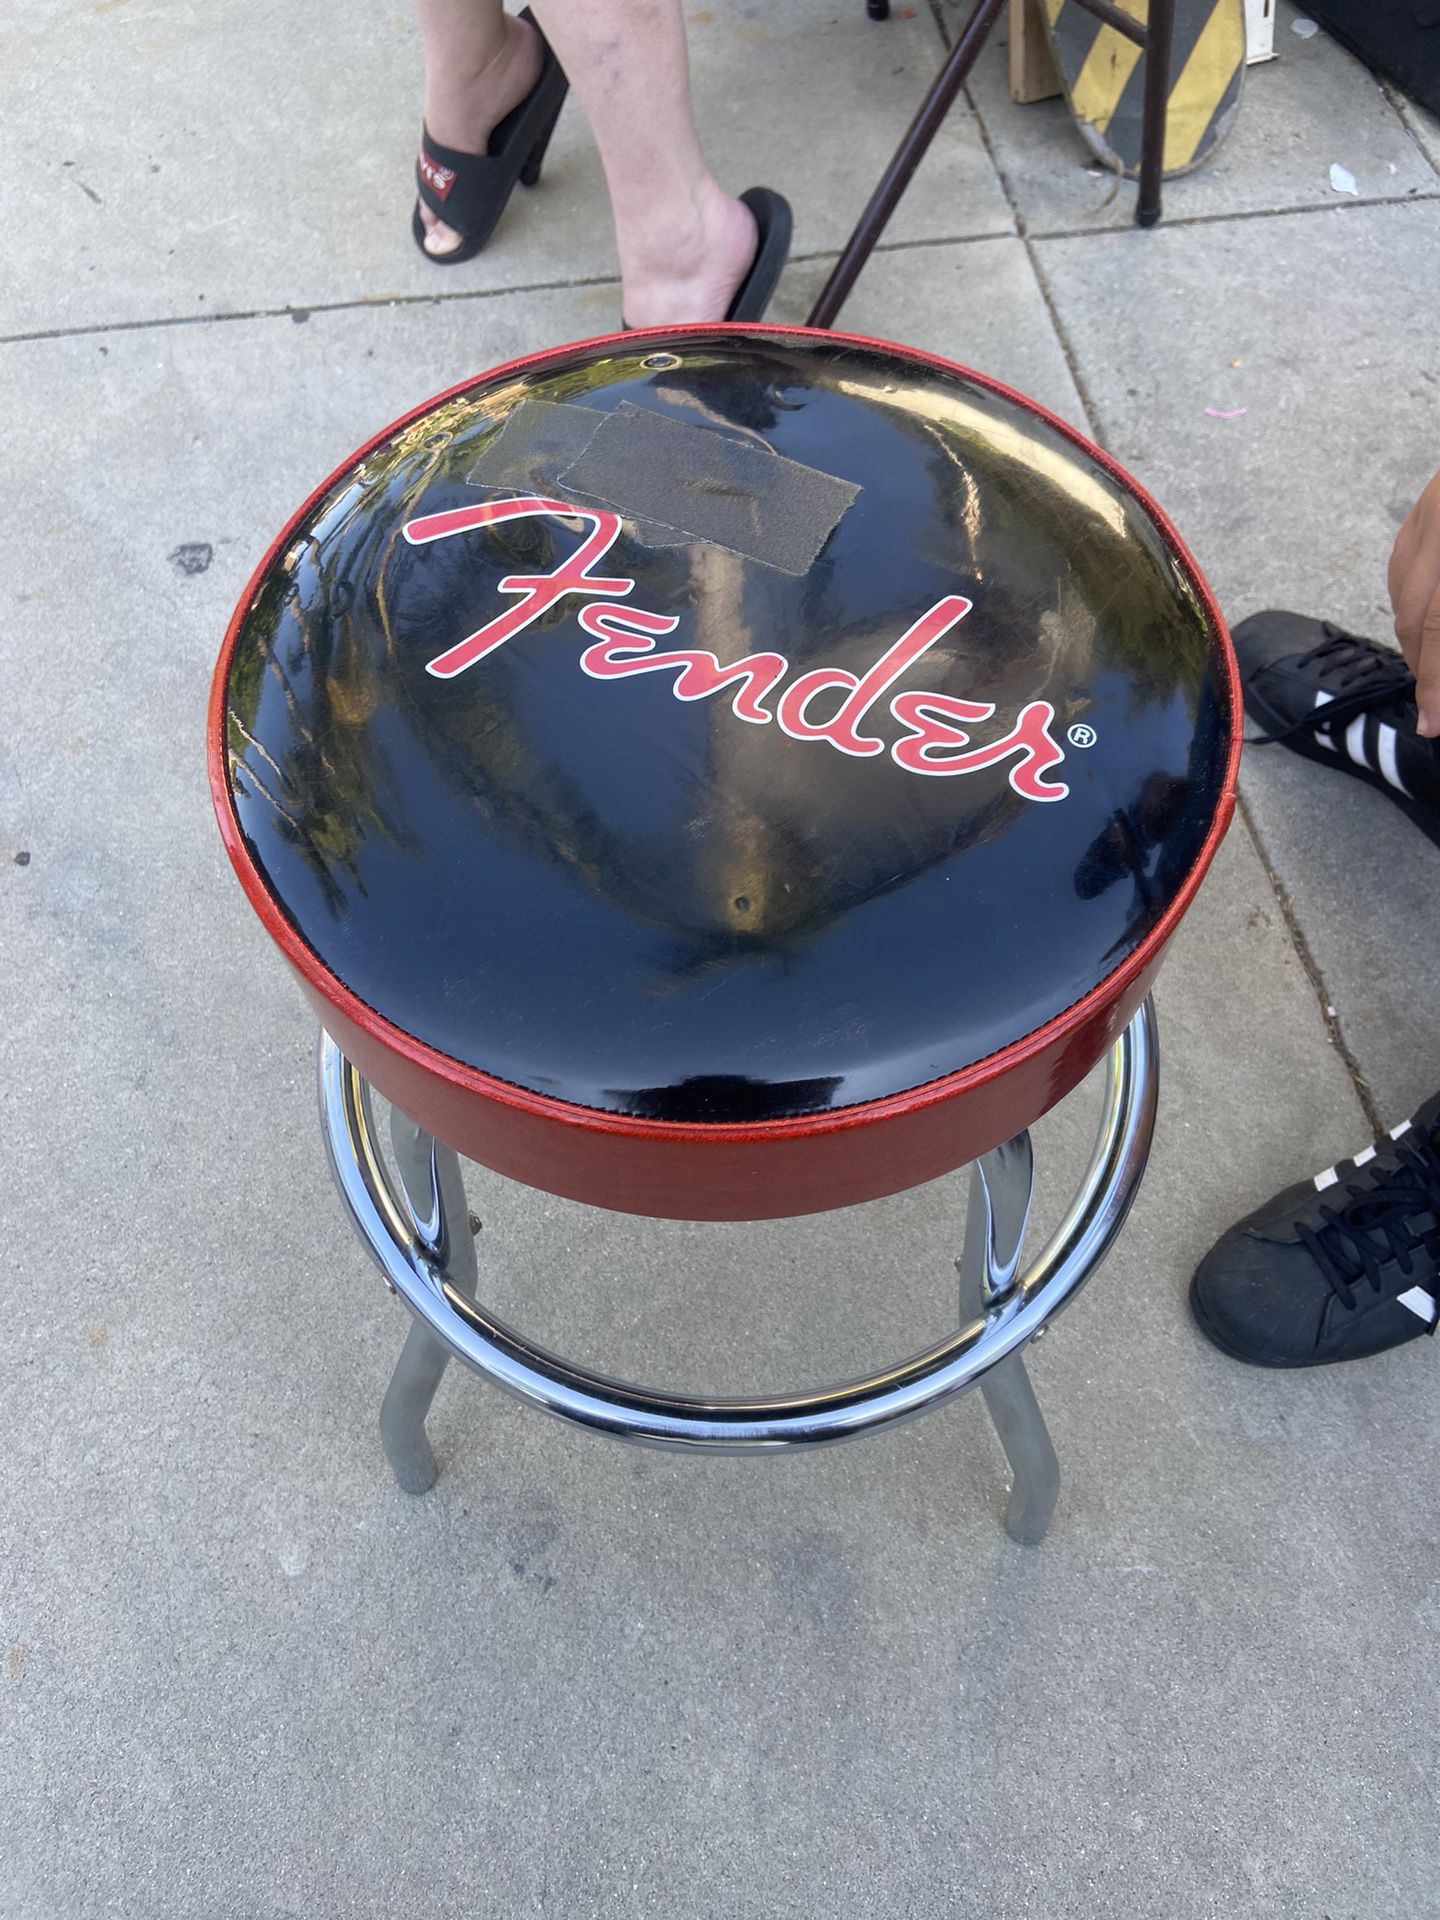 Fender Stool $25